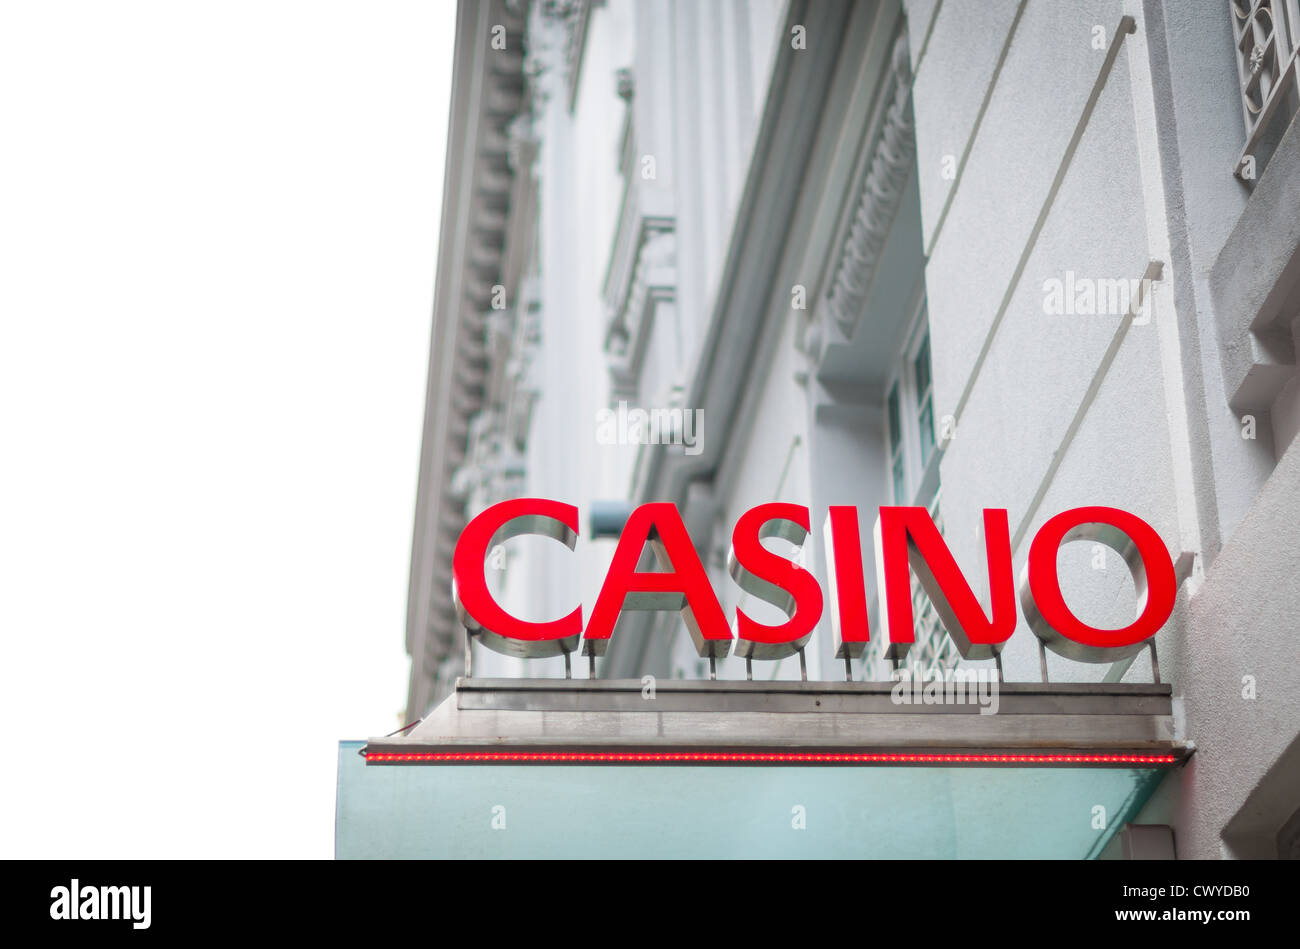 Schild mit Casino darauf geschrieben. Rote Buchstaben des Textes kontrastieren mit weißen Gebäude. Schönes Haus mit Himmel als Hintergrund. Stockfoto